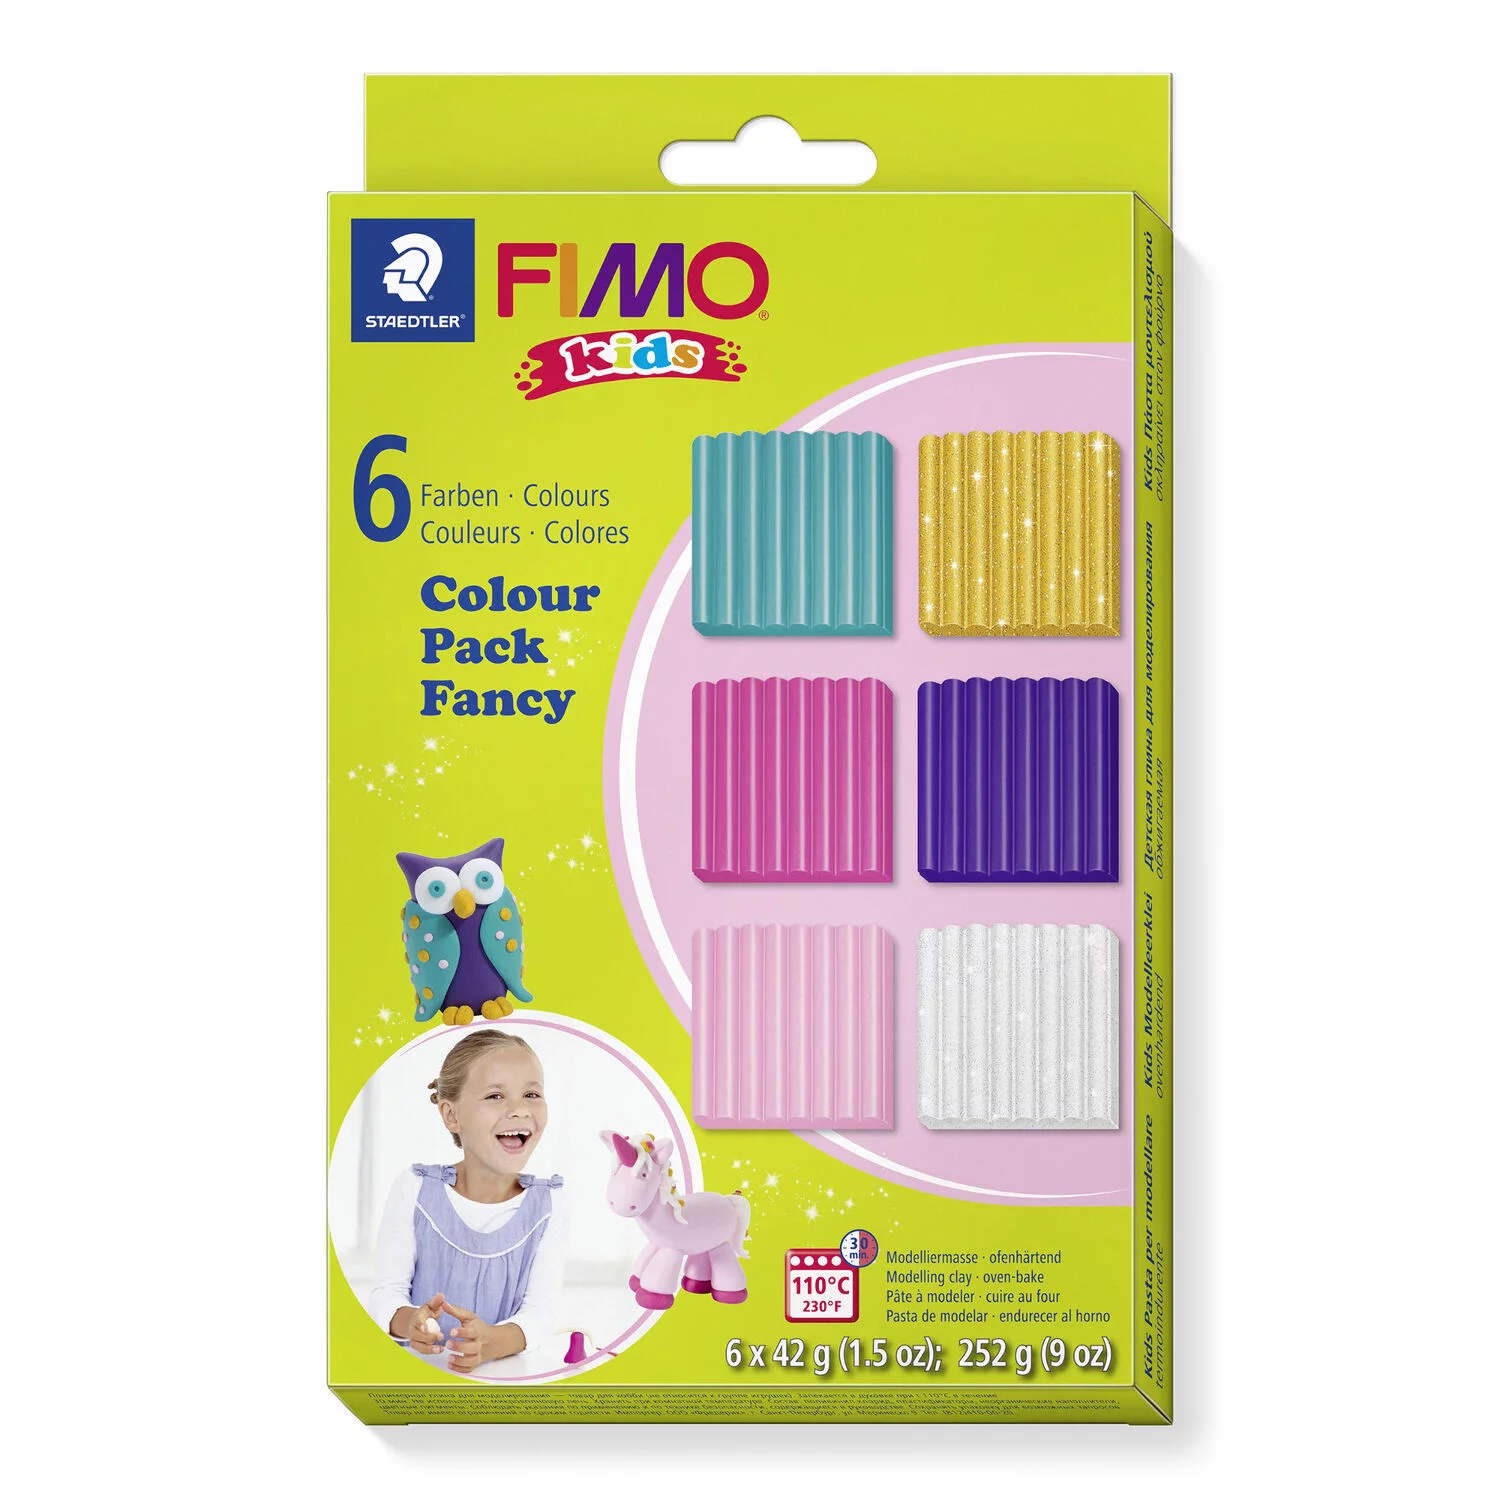 STAEDTLER 8032-02 - Fimo kids Set "Fancy" - ofenhärtende Modelliermasse, 6x42g